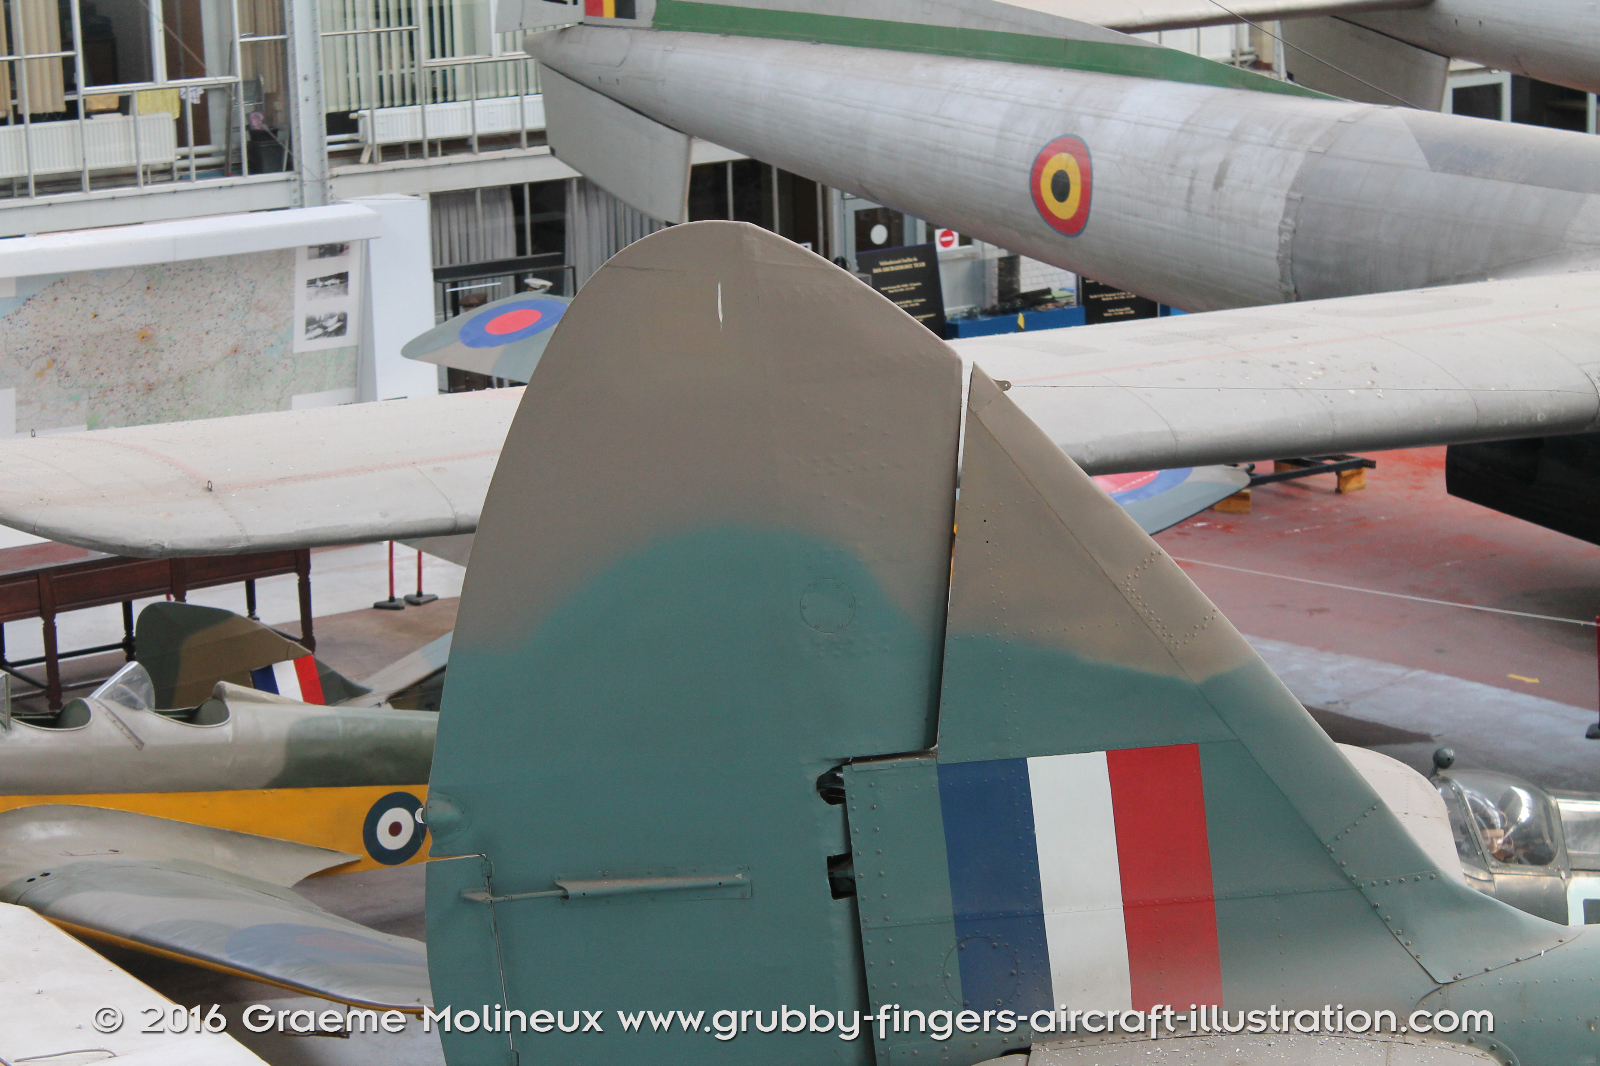 Bristol_Blenheim_MkIV_Walkaround_10083_RAF_Belgium_Museum_2015_07_GraemeMolineux